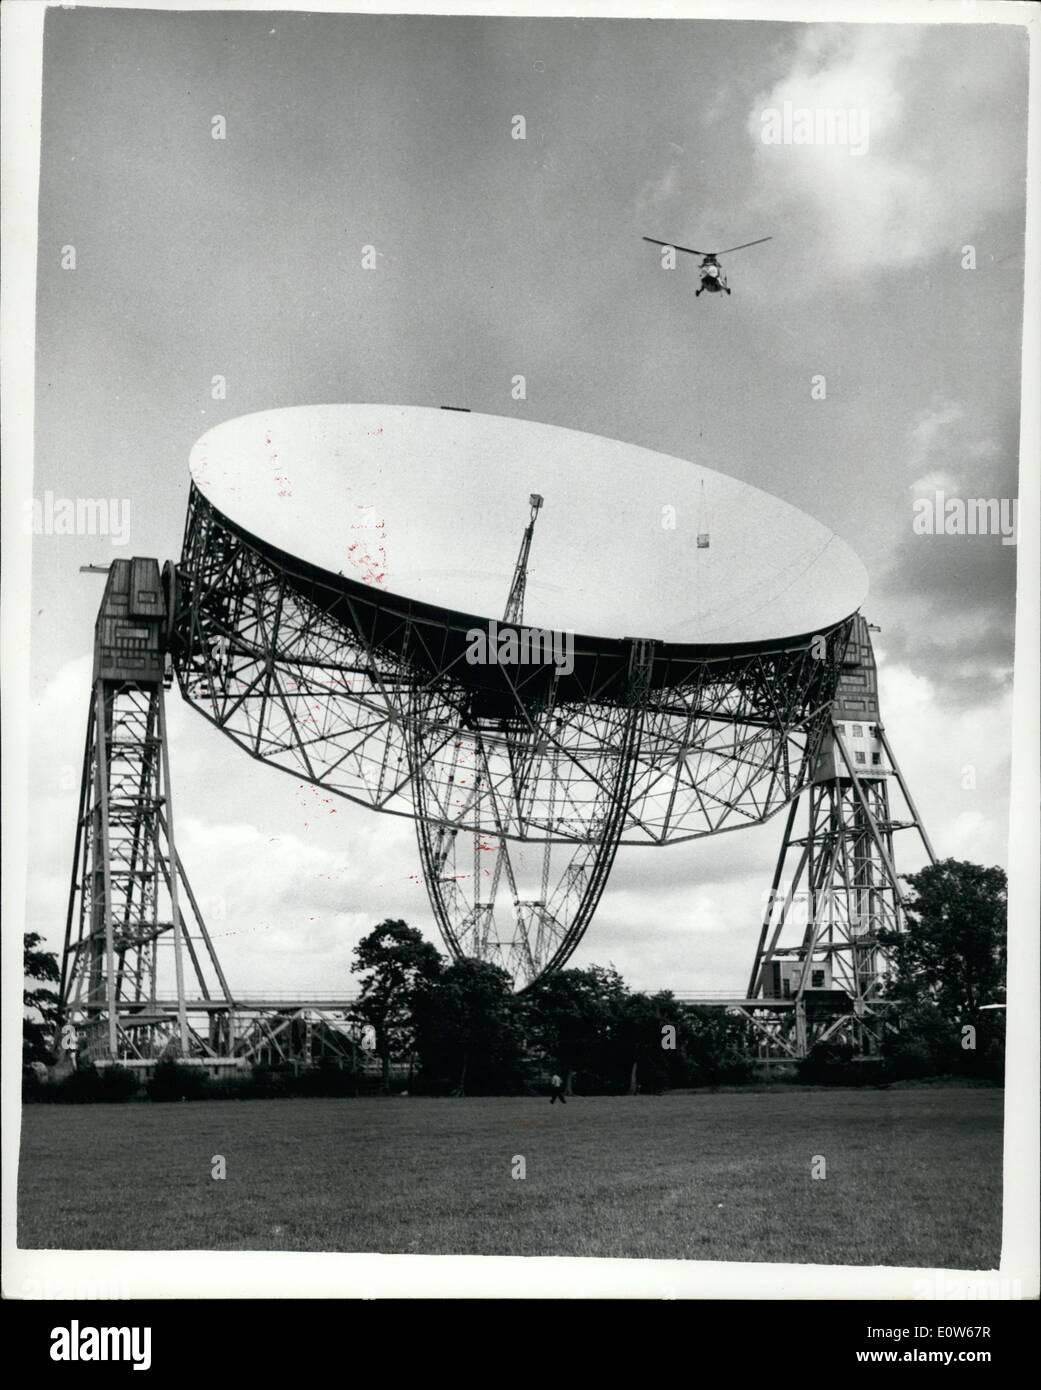 8. August 1961 - Helikopter löst knorrigen Aufgabe, Sender Schüssel mit Teleskop am Jodrell Bank: ein Feuchtgebiet Helikopter war im Einsatz bei Jodrell Bank heute Nachmittag für die knifflige Aufgabe, einen Funk-Sender aus der Schüssel des riesigen Teleskops dort. In der Regel hätte die Entfernung von der 10-Kilowatt-Sender - verliehen von den USA für die Überwachung der amerikanischen Satelliten-Signale - erfordert den Abbau des Bogens Teleskope. Jedoch den Einsatz eines Hubschraubers als eine improvisiert '' Sky Sprunggelenk '' machte den Job casier Stockfoto